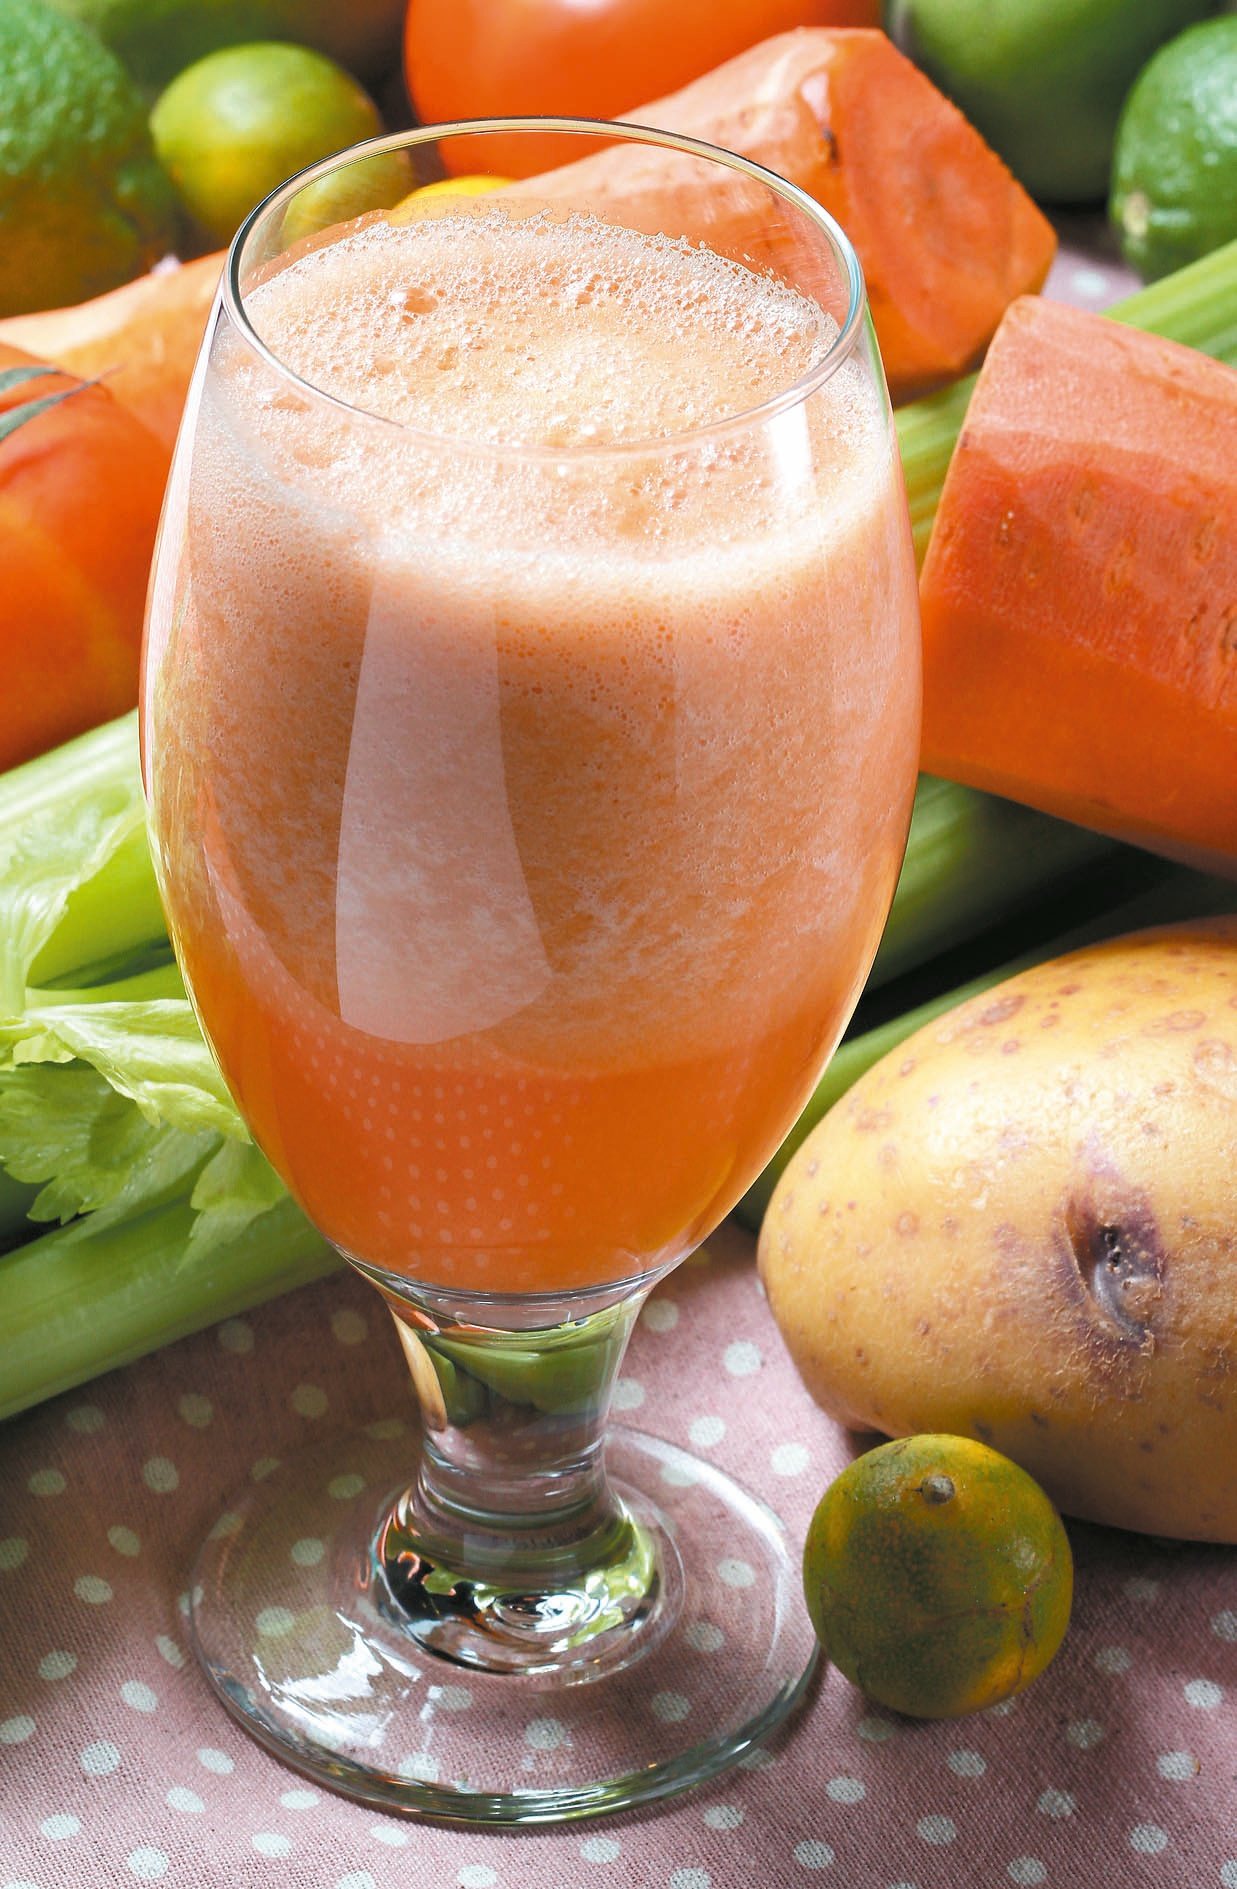 現榨水果汁加入蔬菜打成精力湯，可緩和對消化道的刺激。